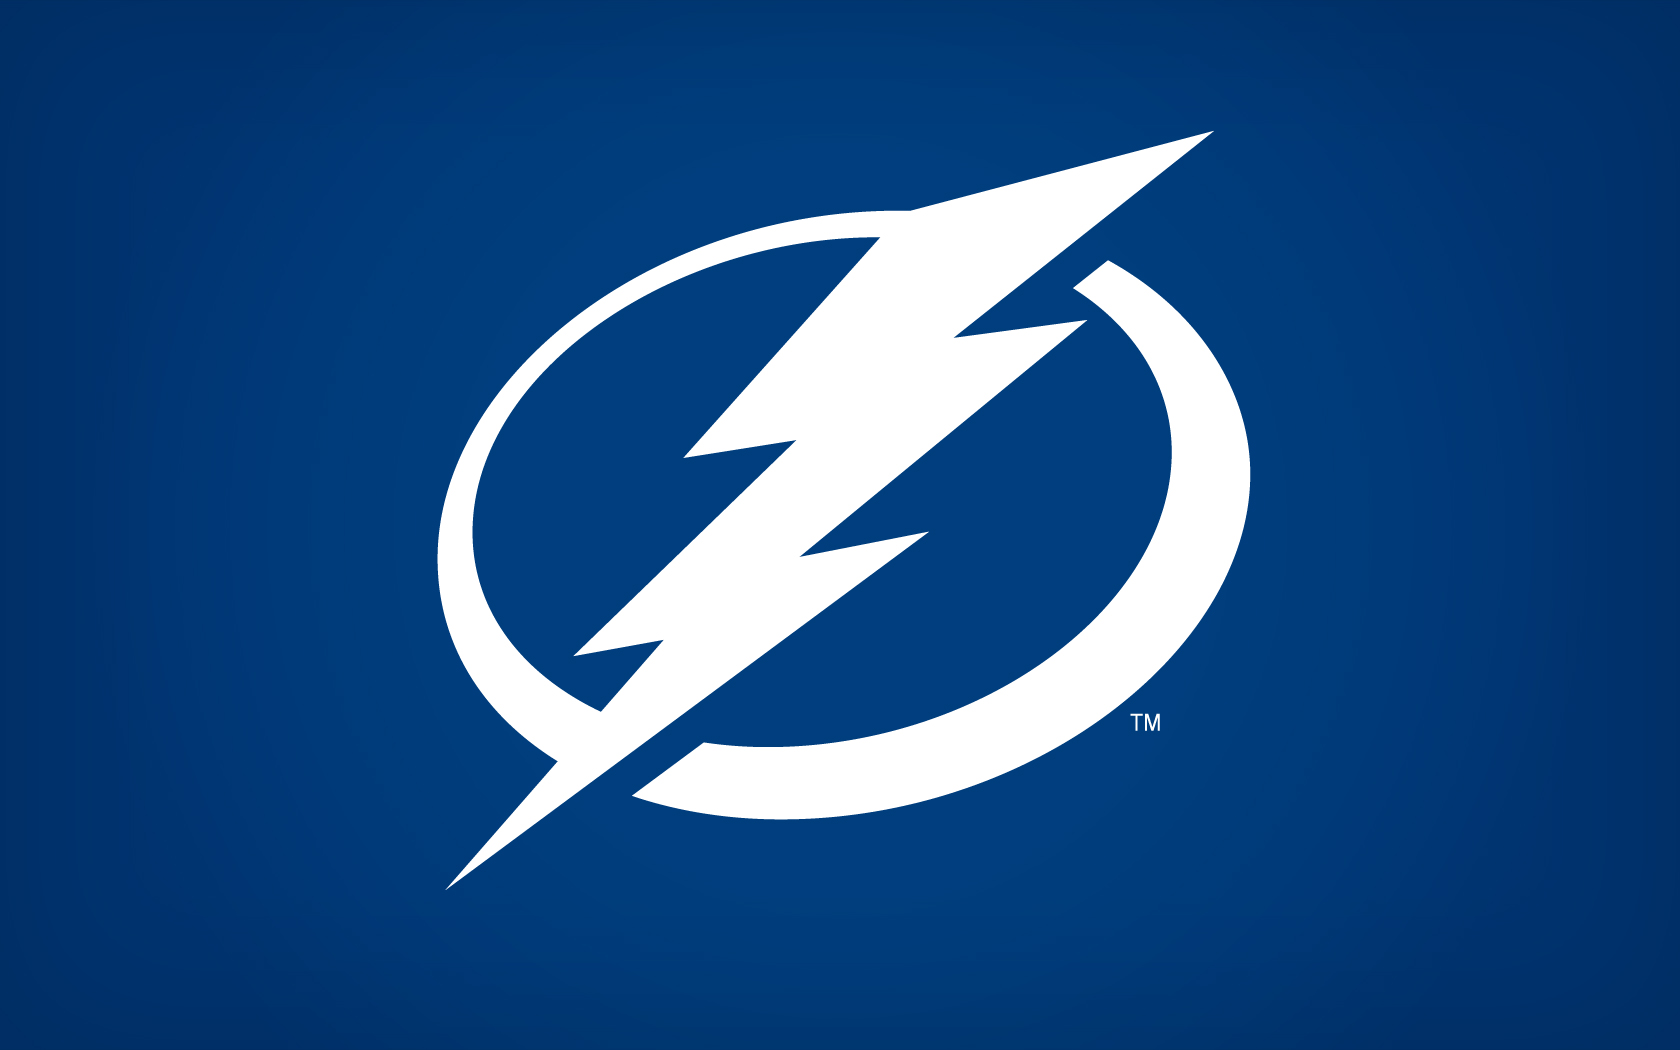 Tbl Logo Wallpaper Tampa Bay Lightning